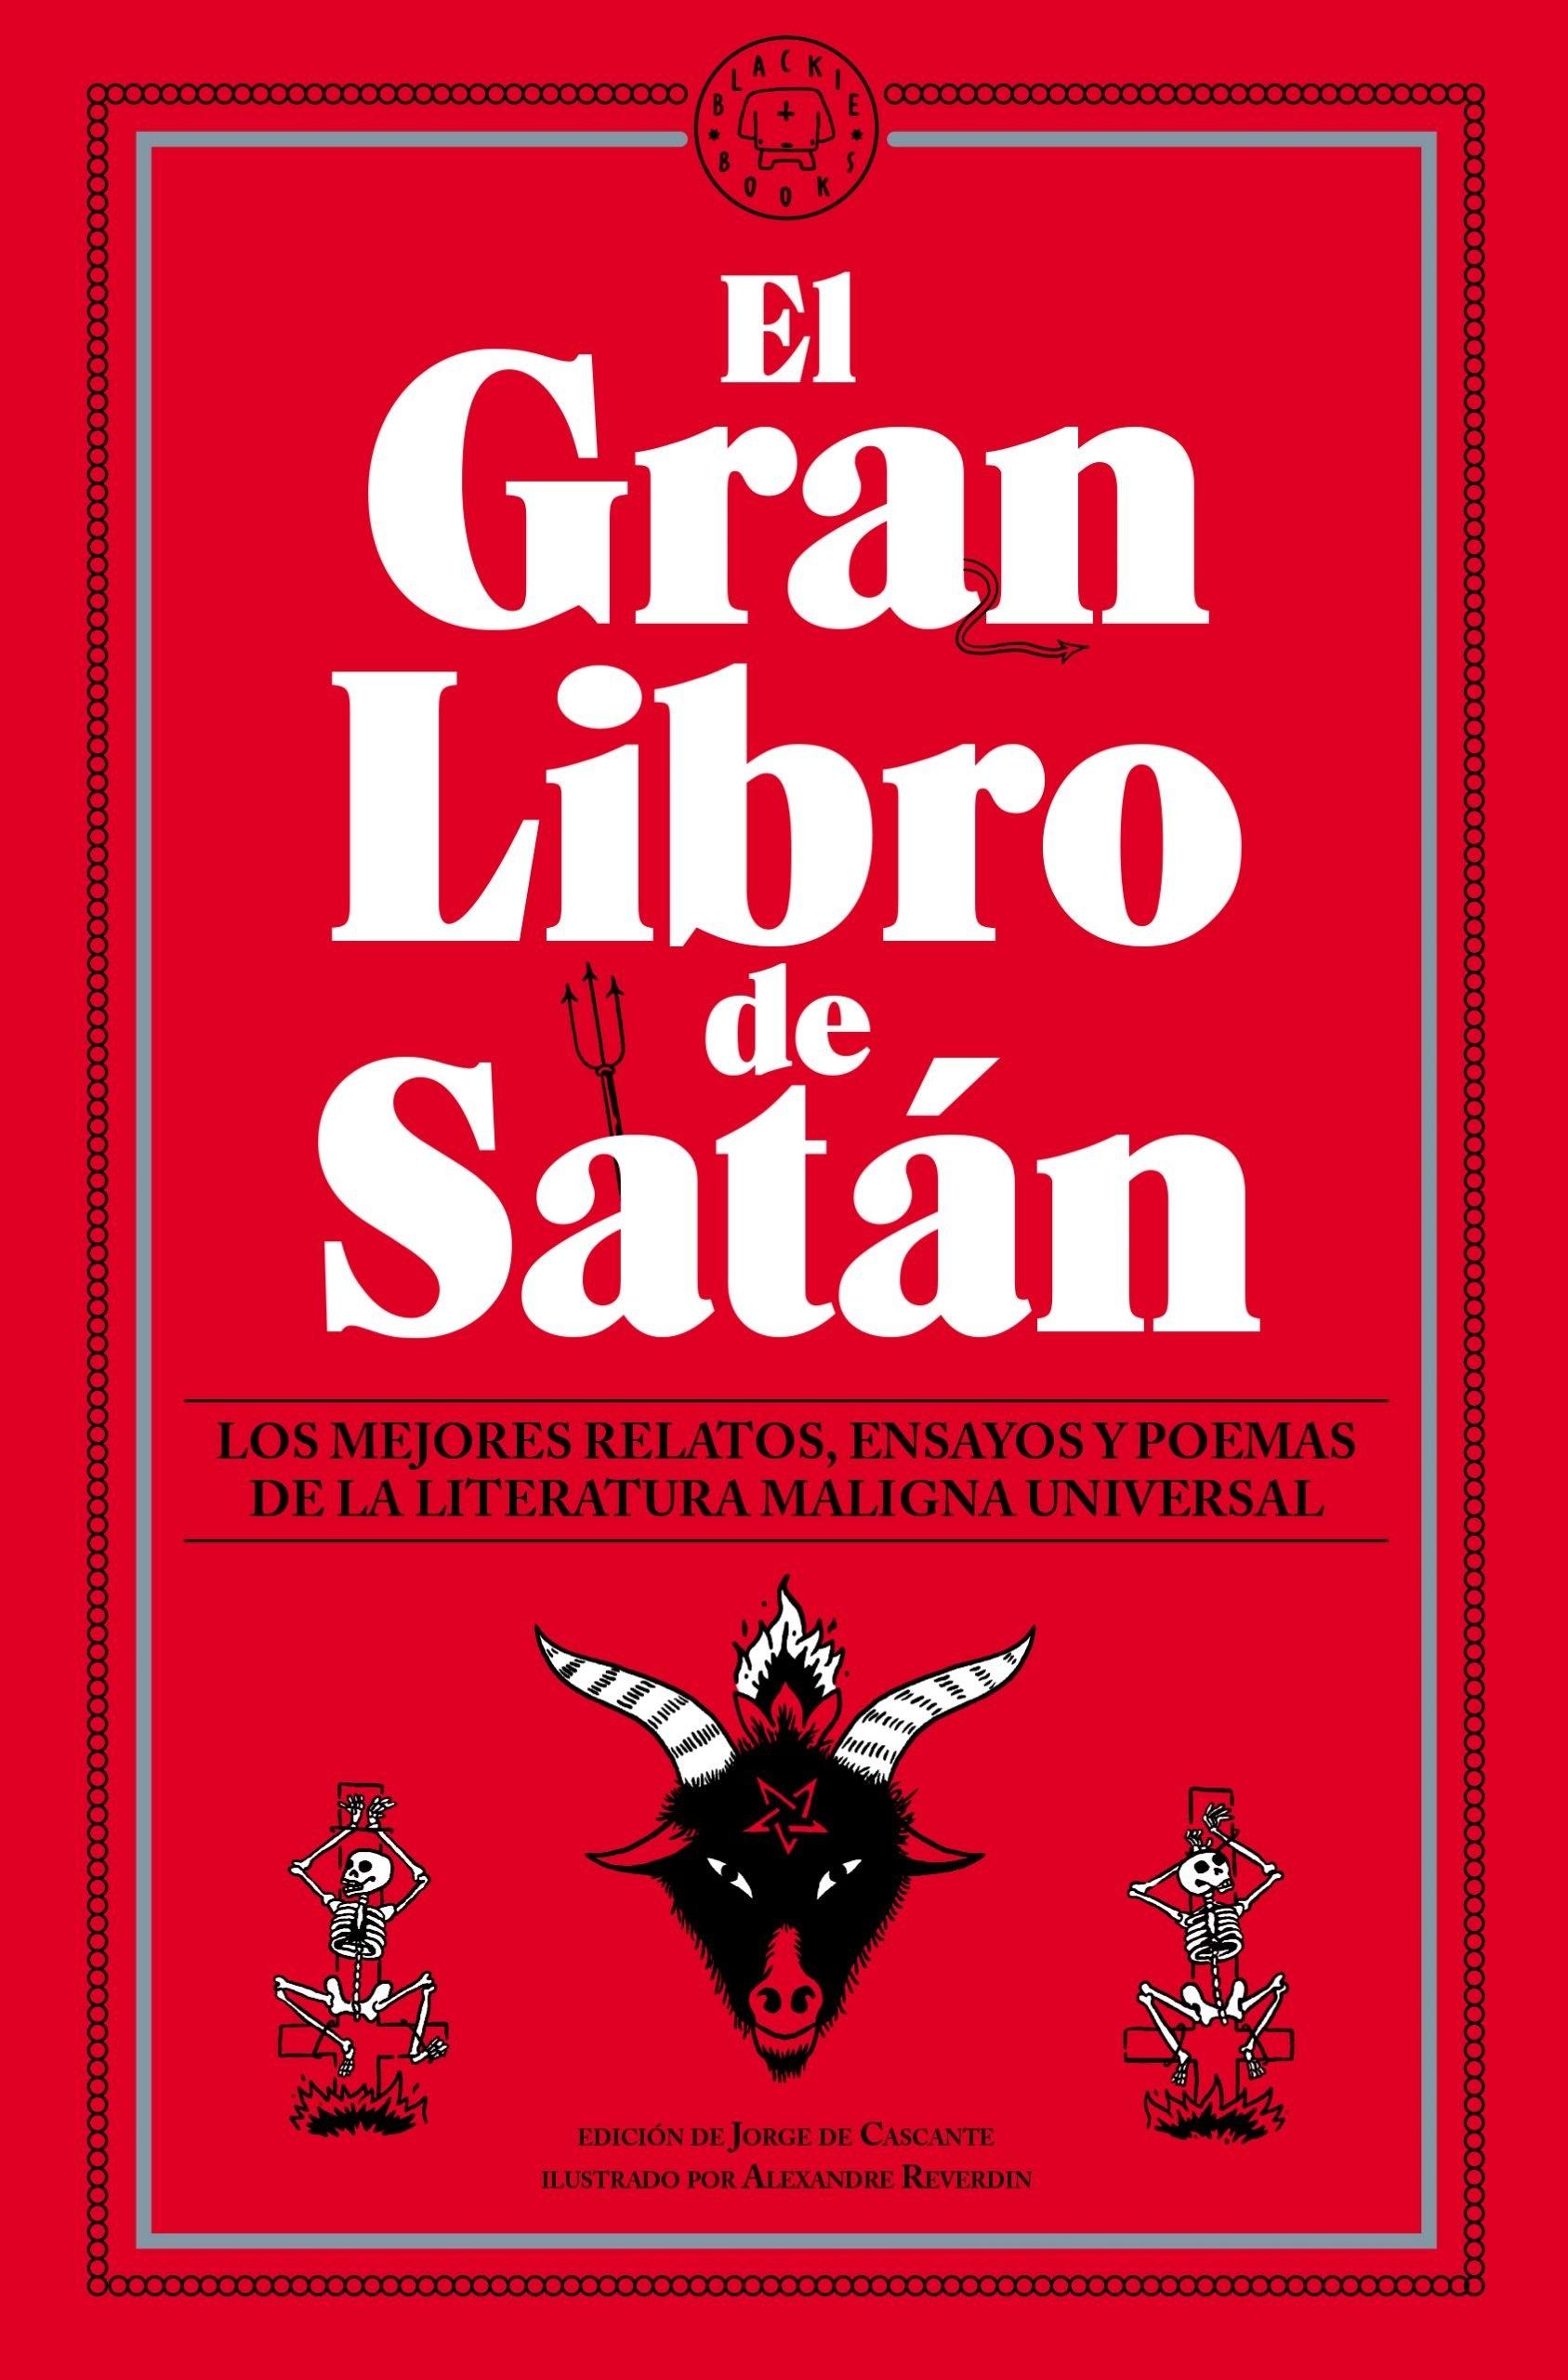 Gran Libro de Satán, El  "Los mejores relatos, ensayos y poemas de la literatura maligna universal"